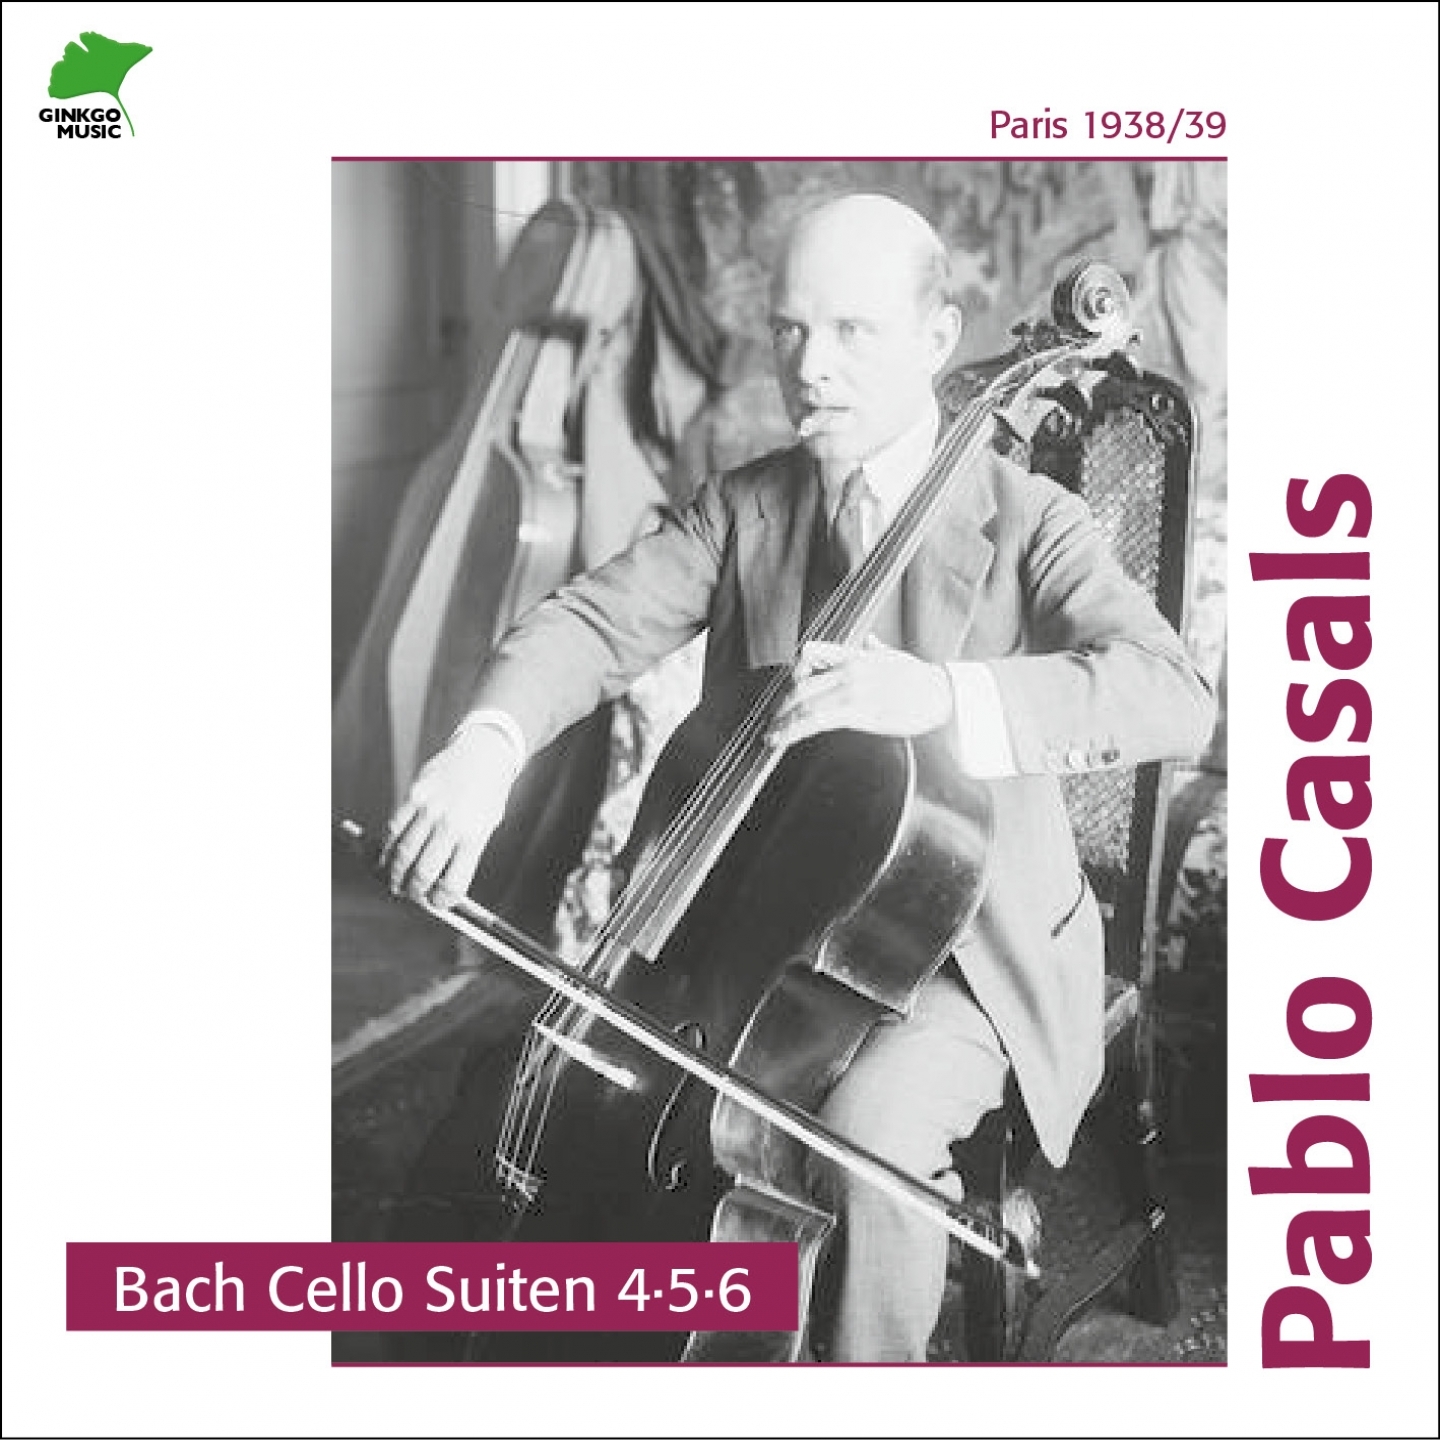 Cello Suite No. 5, in C Minor, BWV 1011 Allemande